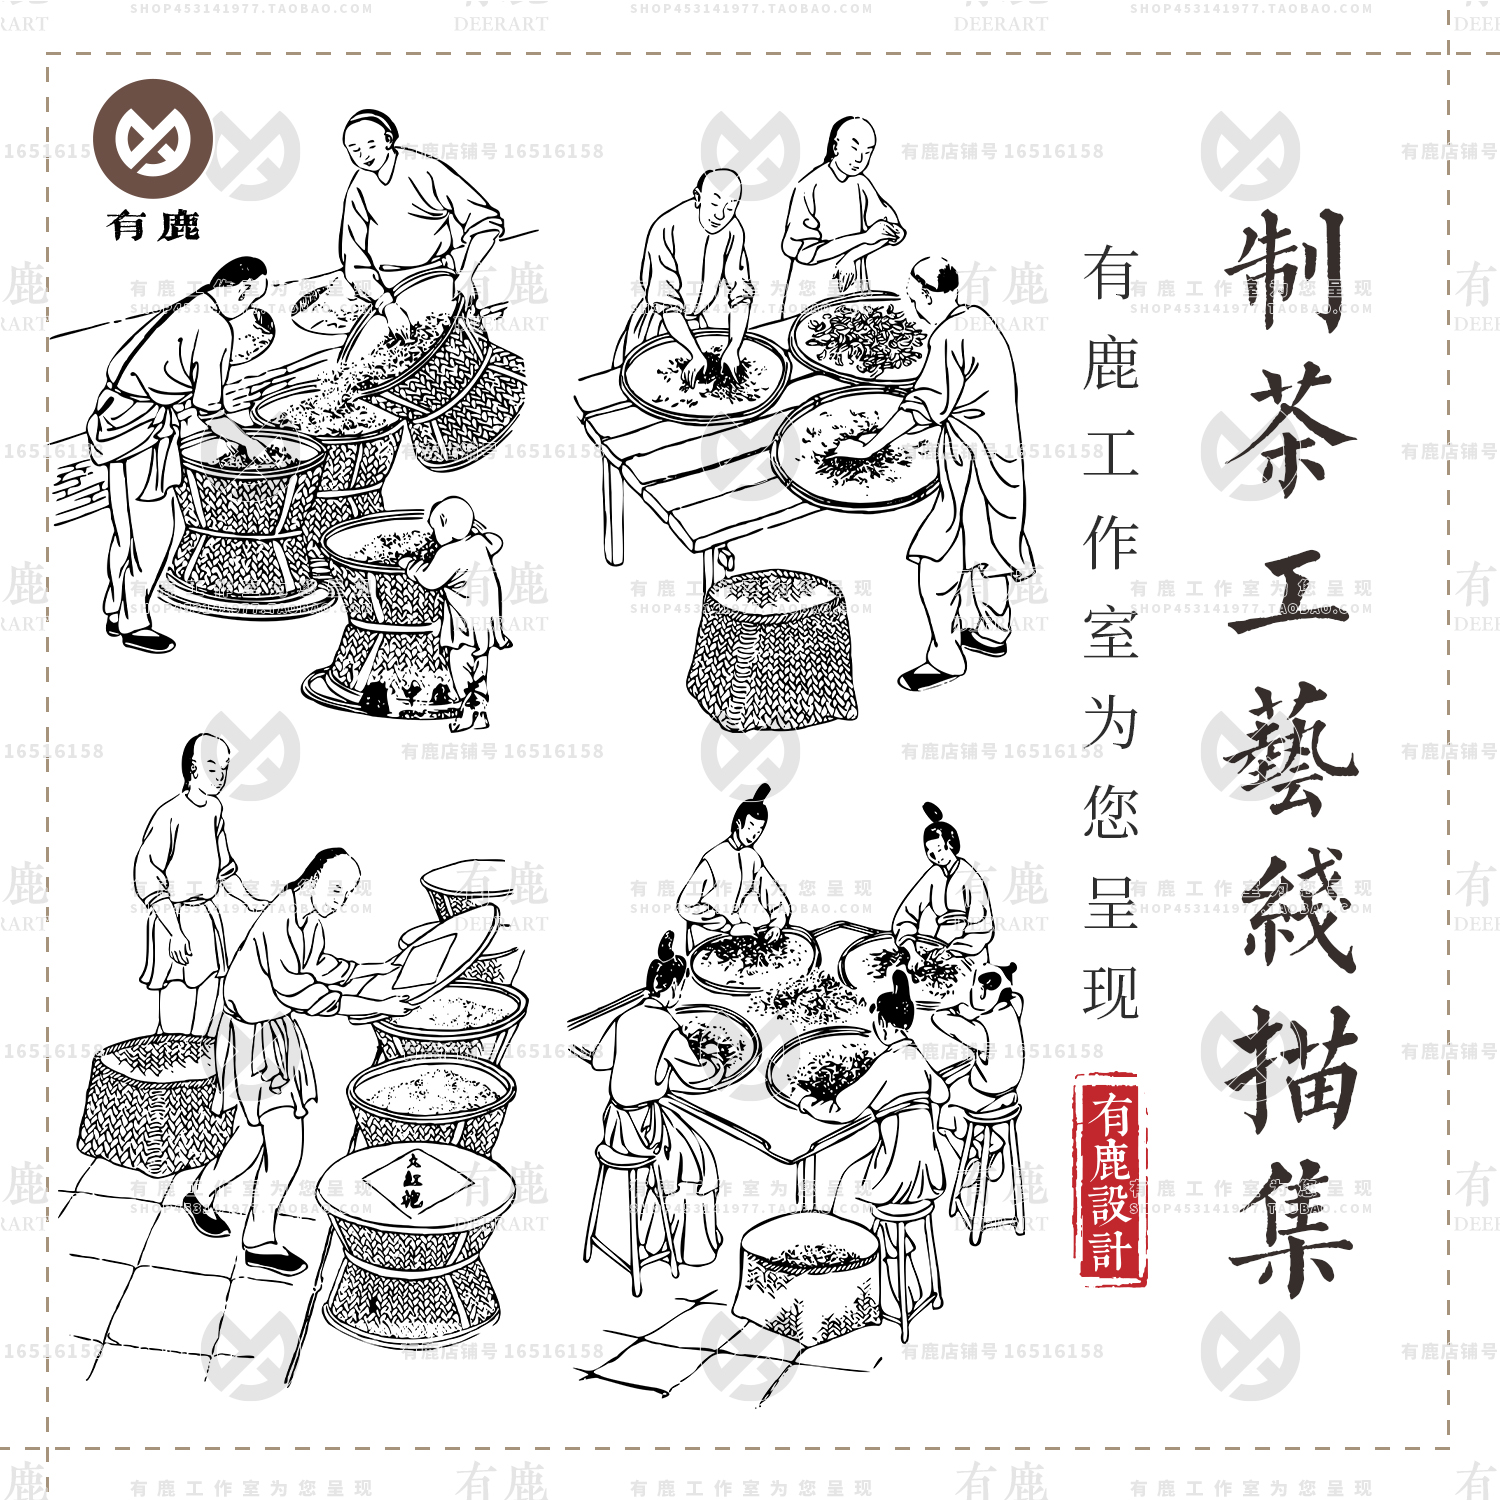 传统制茶工艺制作茶叶炒茶流程线稿线描图手绘包装插画AI矢量素材